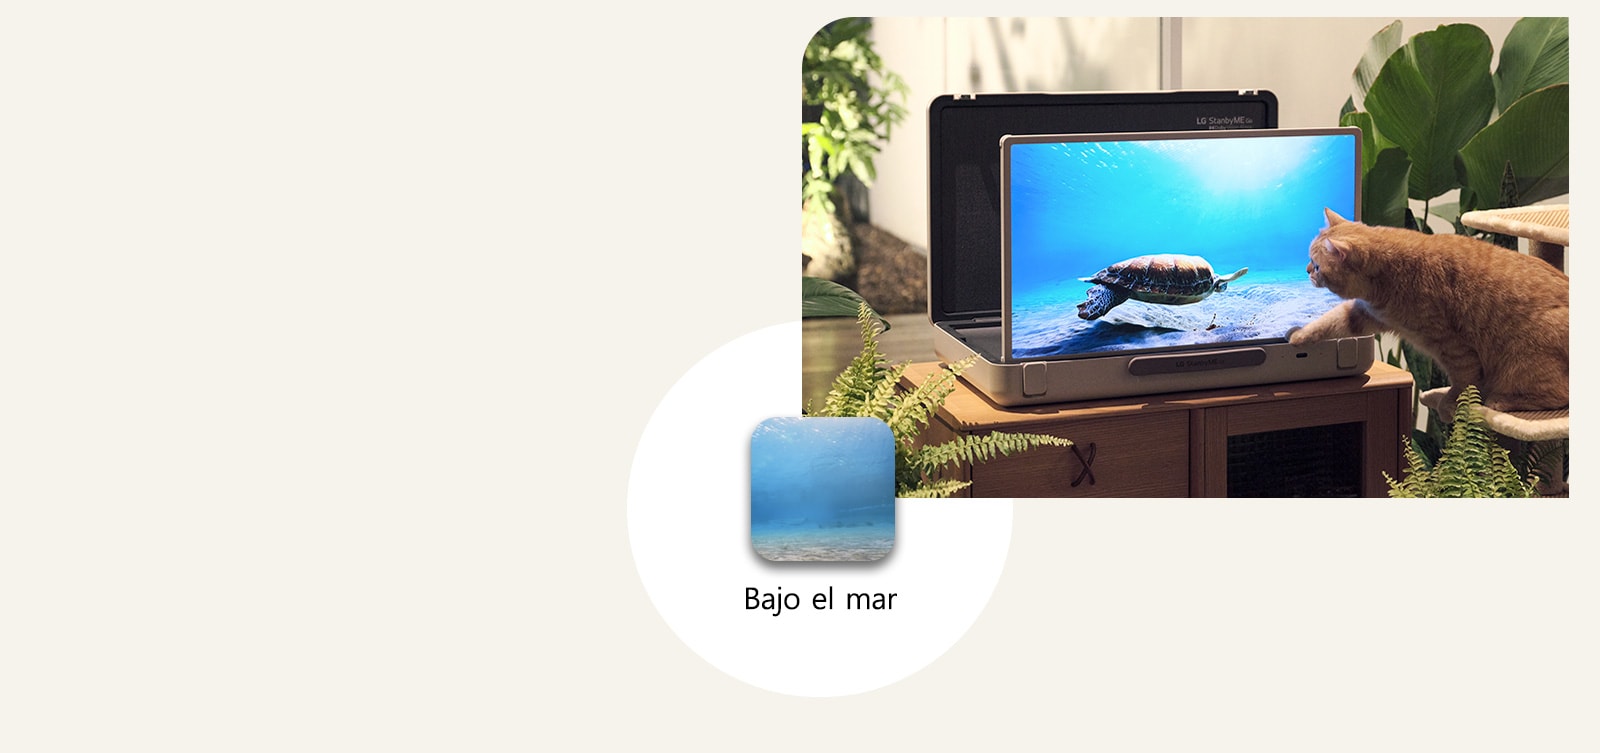 El LG StanbyME Go está colocado en el jardín, y la pantalla muestra bajo el mar. Delante de la pantalla hay un gato sentado en un taburete, intentando atrapar una tortuga en la pantalla.